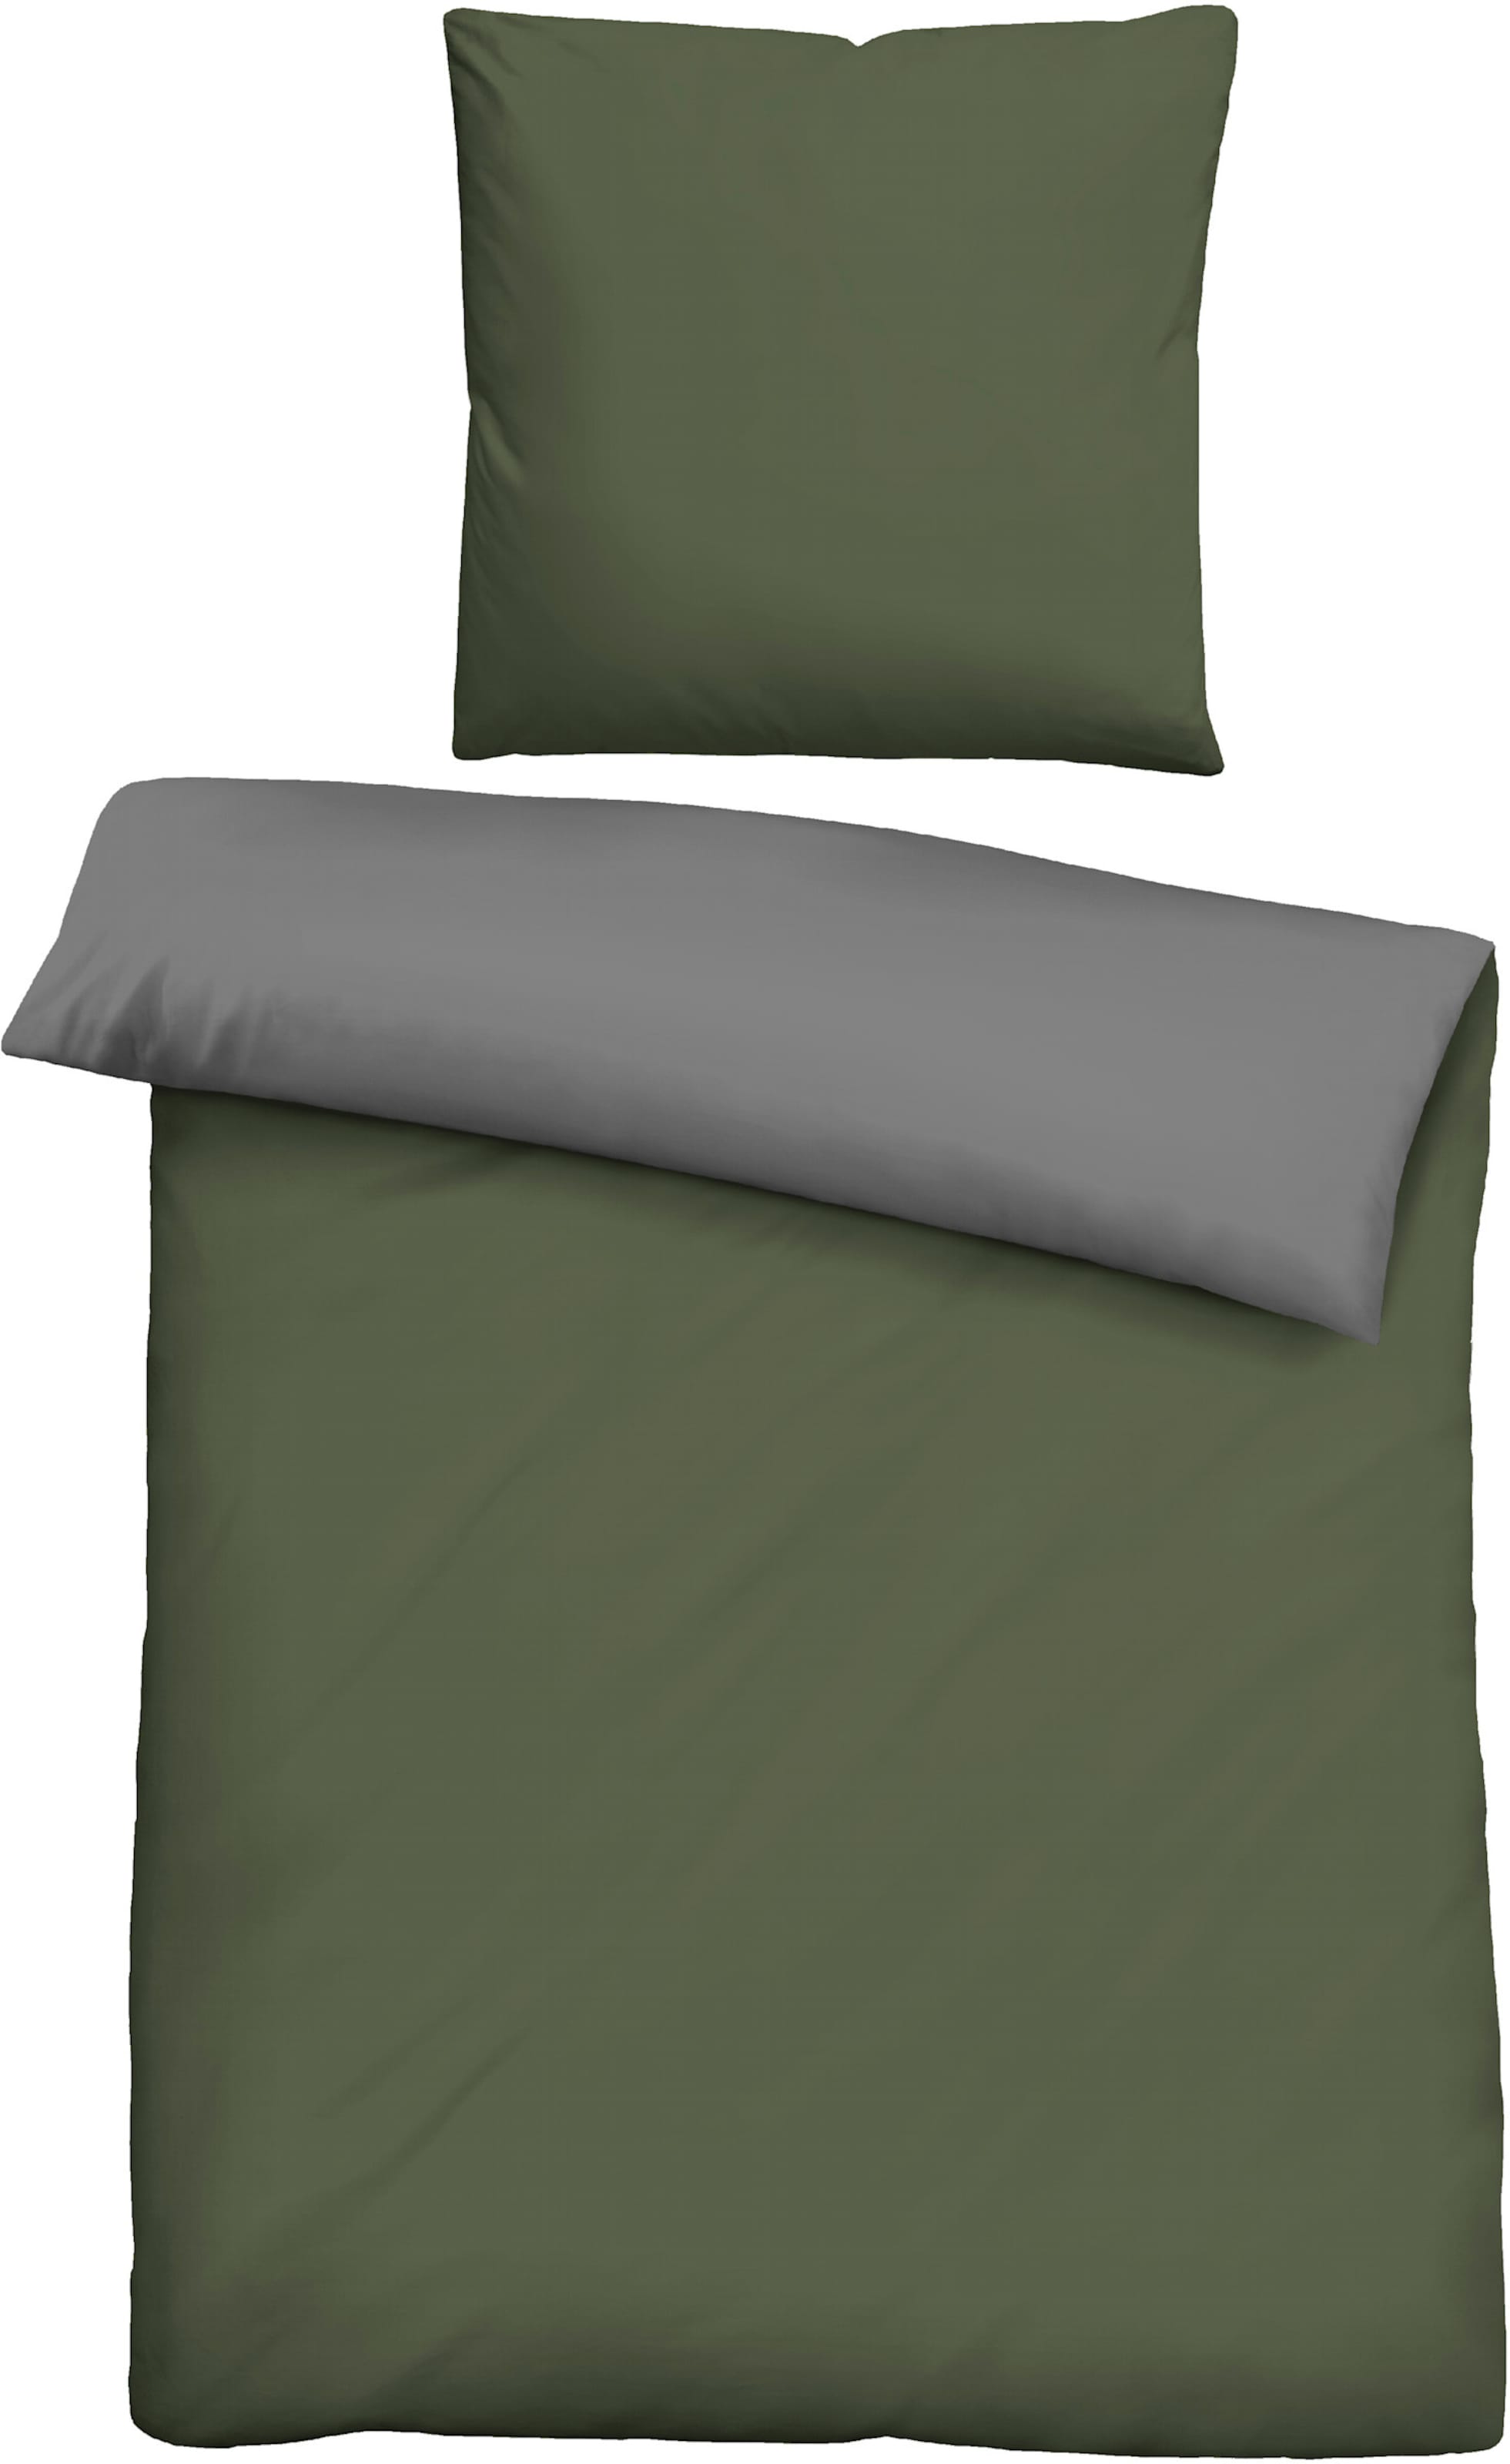 und modern günstig Kaufen-Bettwäsche in grün-grau von Biberna. Bettwäsche in grün-grau von Biberna <![CDATA[Bettwäsche von BIBERNA. Moderne Wende-Bettwäsche in hochwertiger feinfädiger Linon-Qualität - hautsympathisch, atmungsaktiv und strapazierfähig. Sch